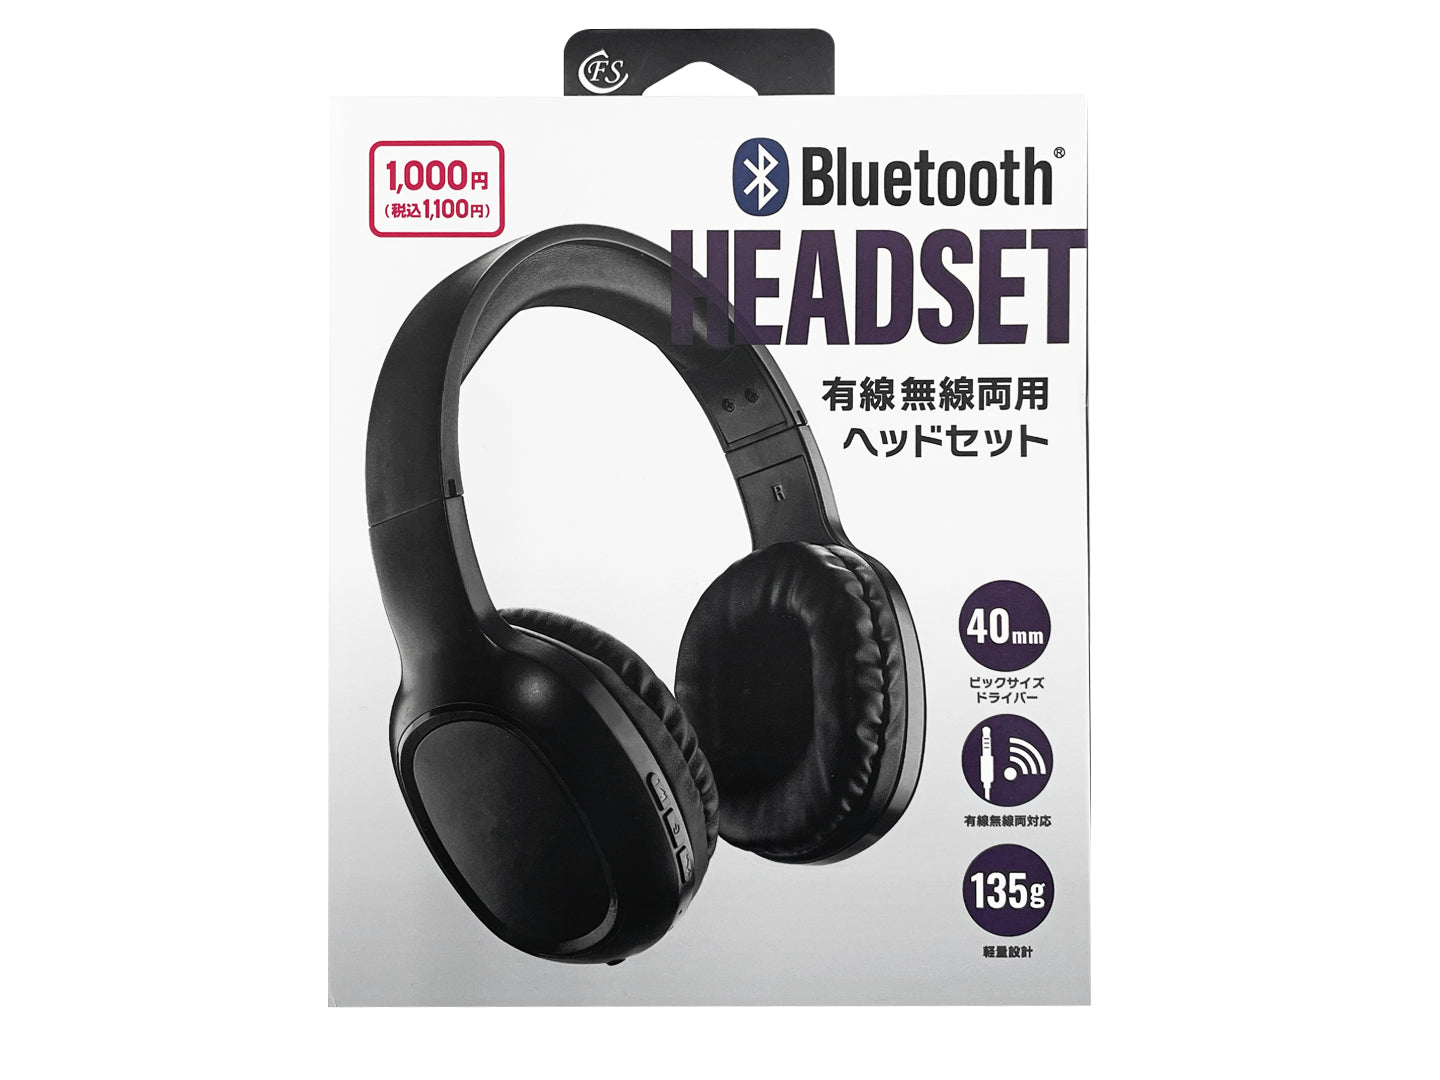 ヘッドセット Bluetooth ワイヤレス ヘッドホン マイク付き ミュート機能 充電台 電話対応 業務用 コールセンター用 スマホ 片耳 ヘッドセット 400-BTMH023BK